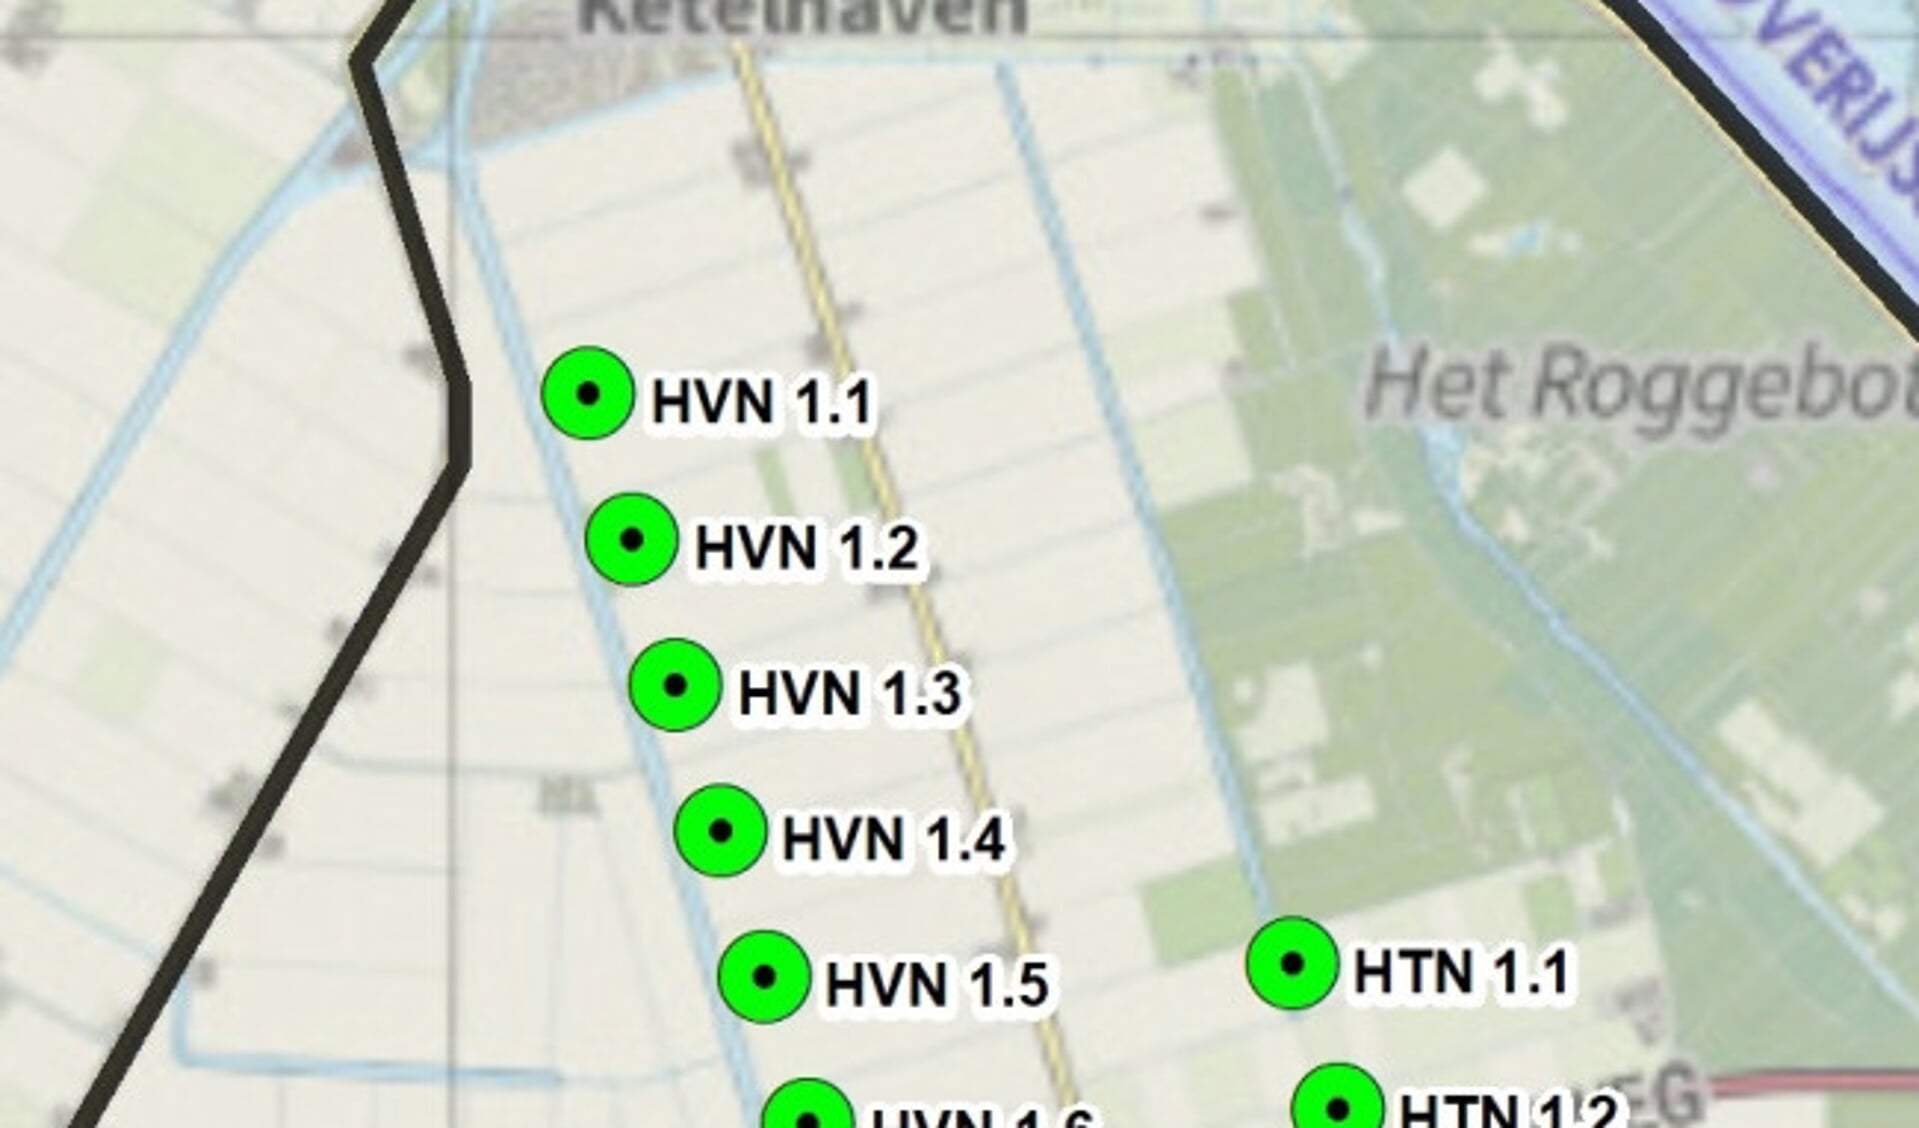  De locatie van de windmolens bij Ketelhaven.